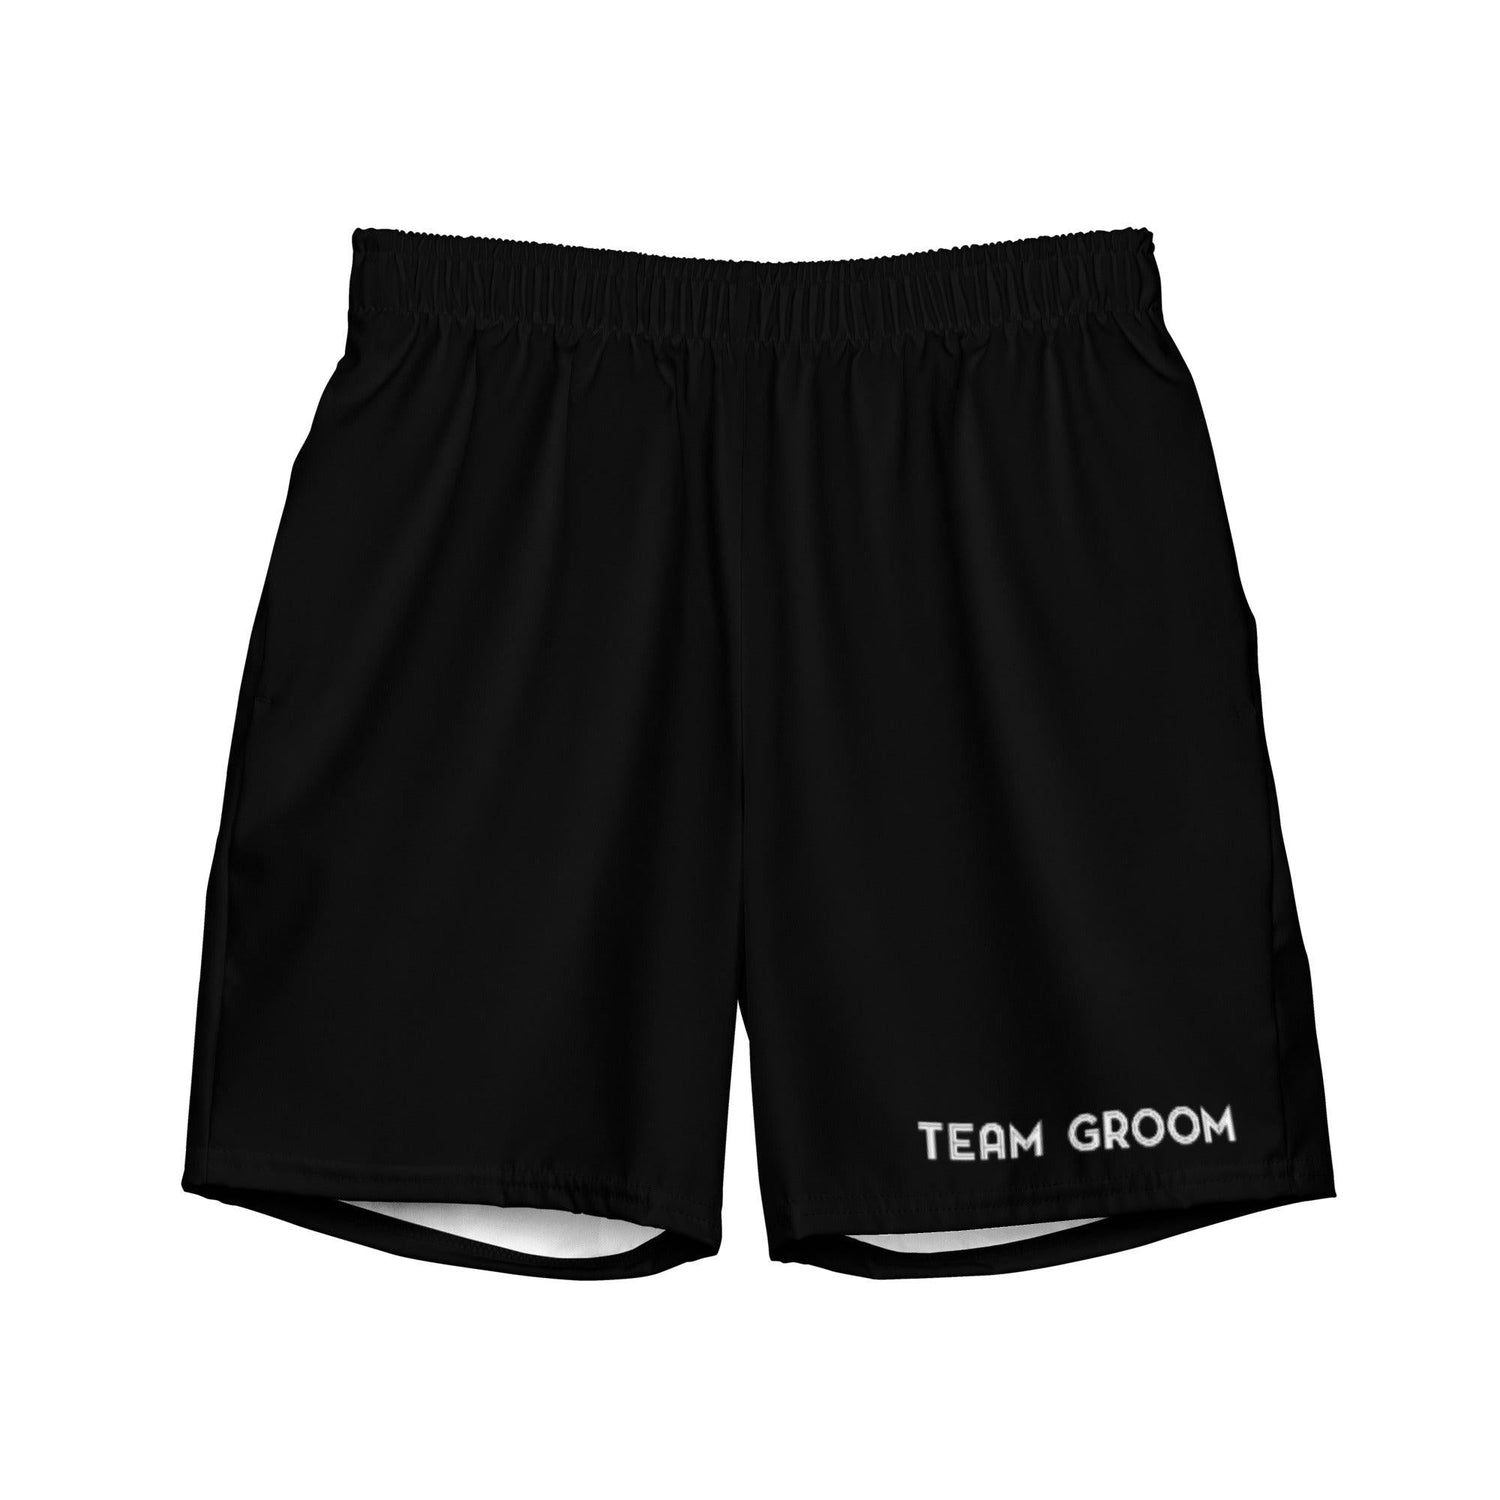 Team Groom - Men's swim trunks - Bachelor Party Swimwear by Oaklynn Lane